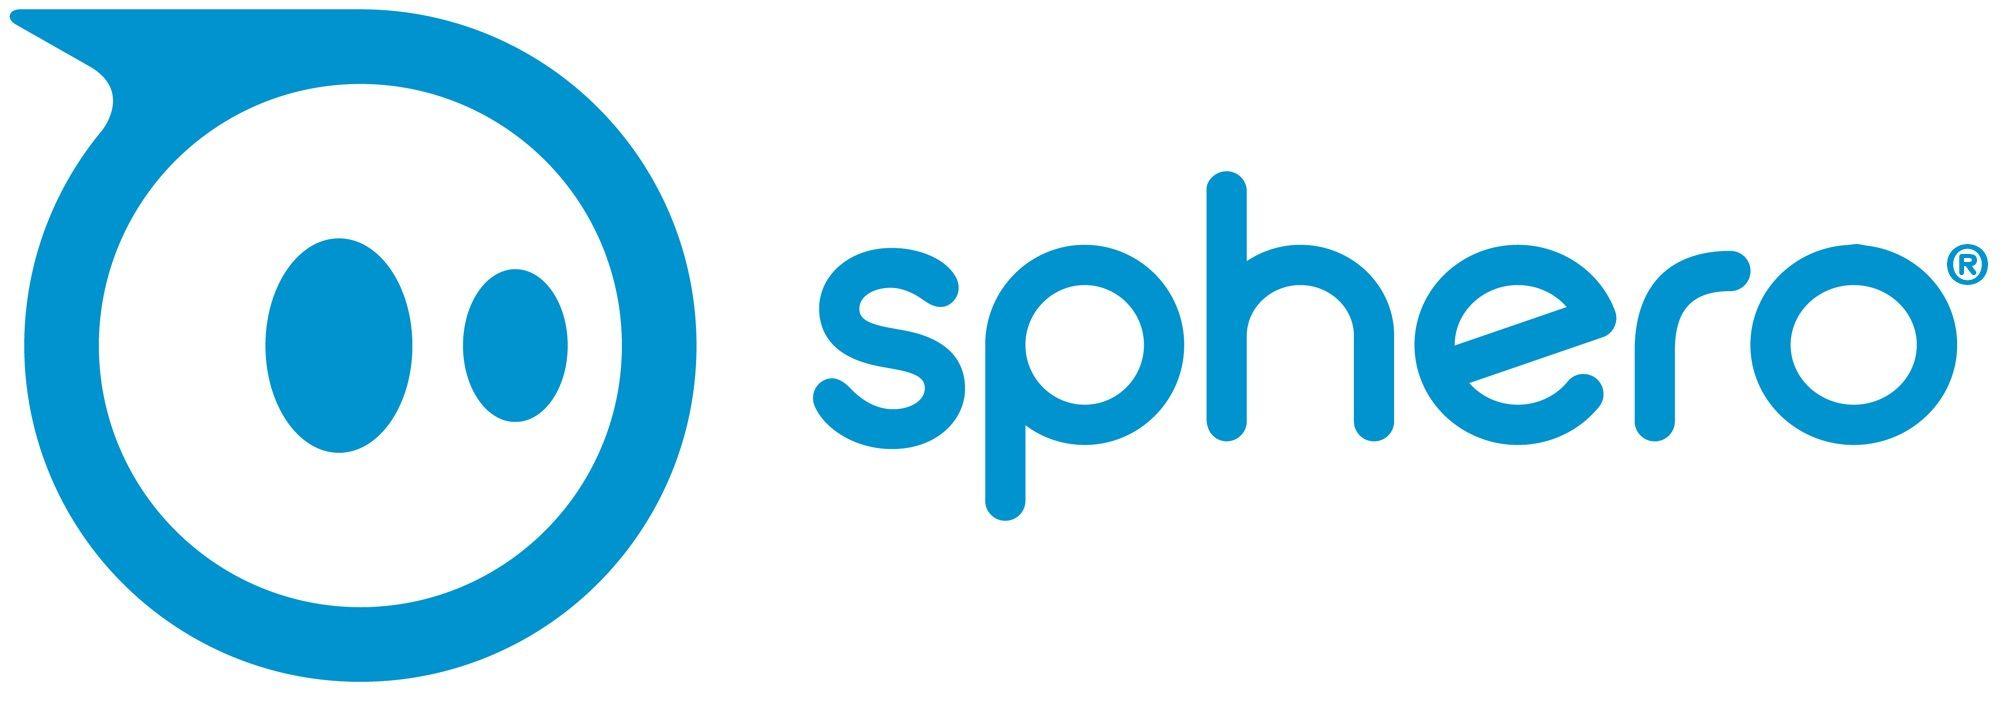 Sphero Logo - Sphero logo